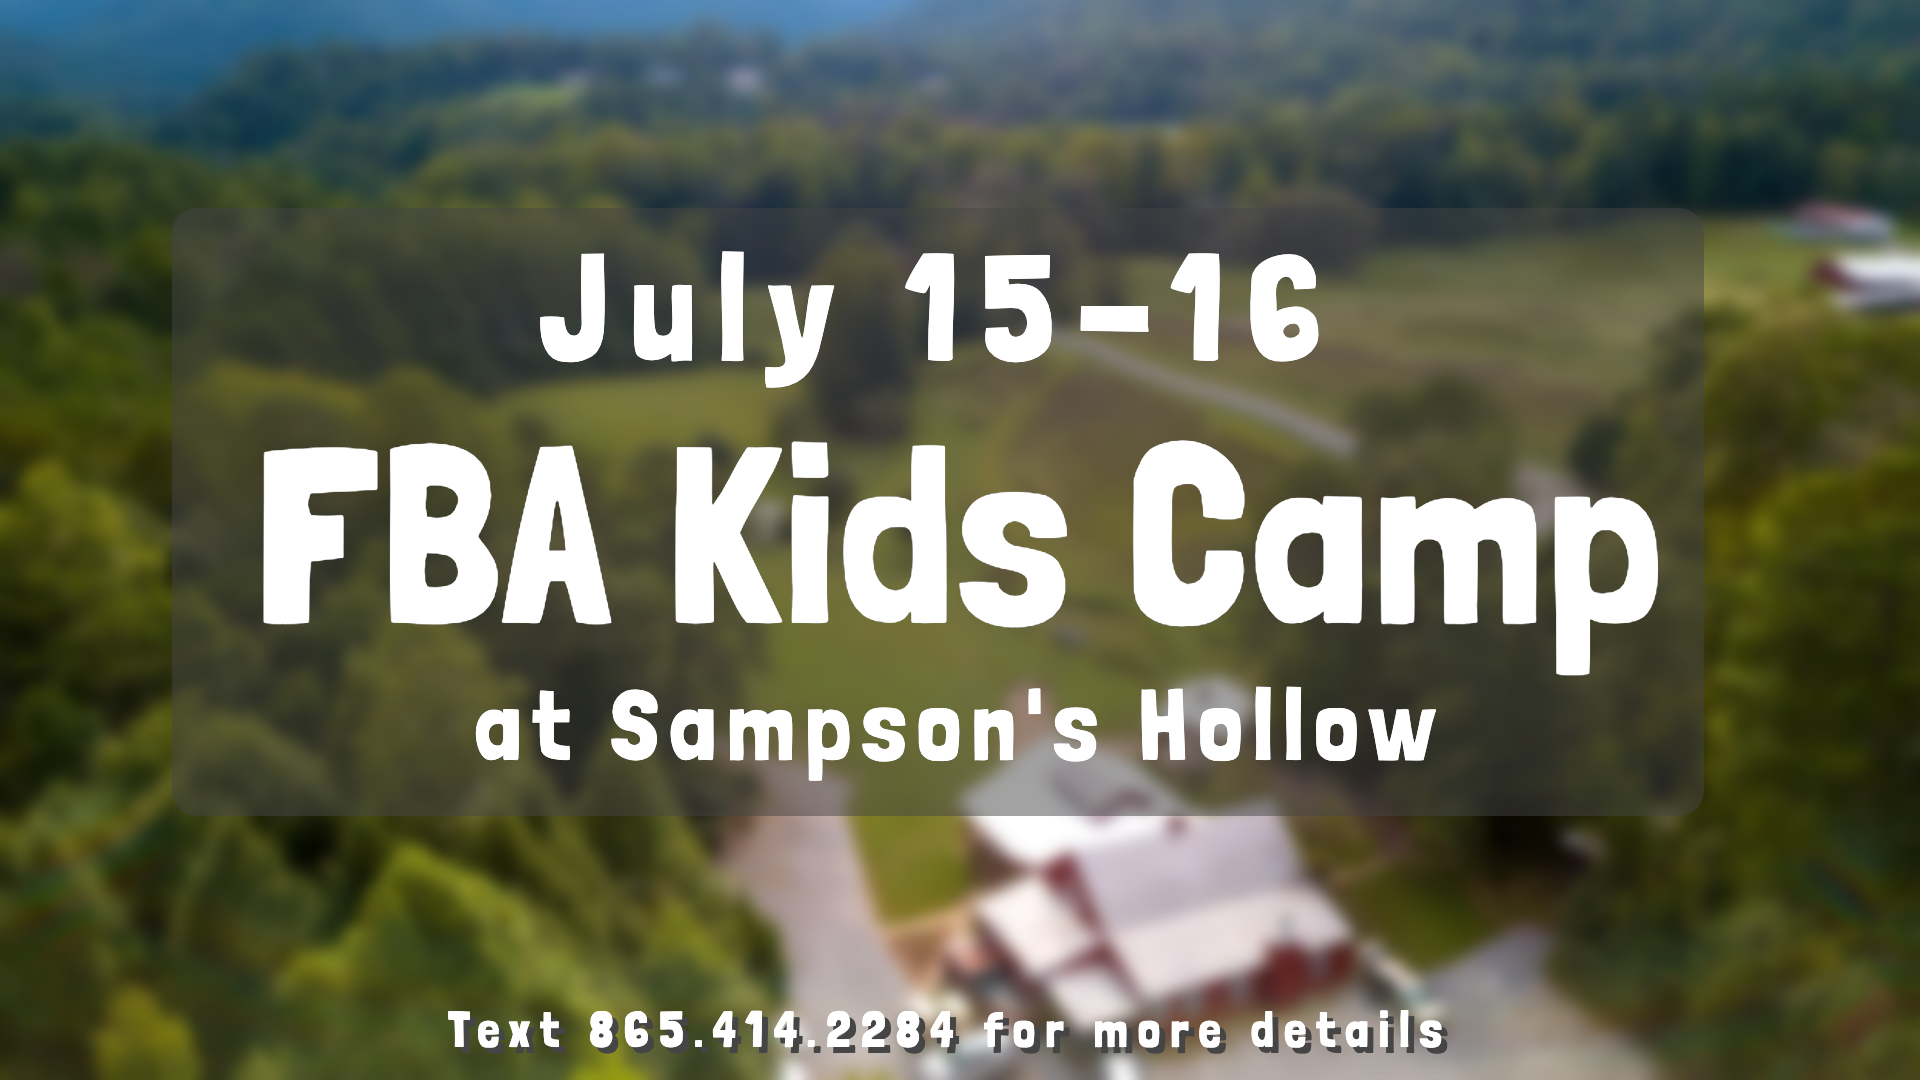 Kids Camp 2019 image